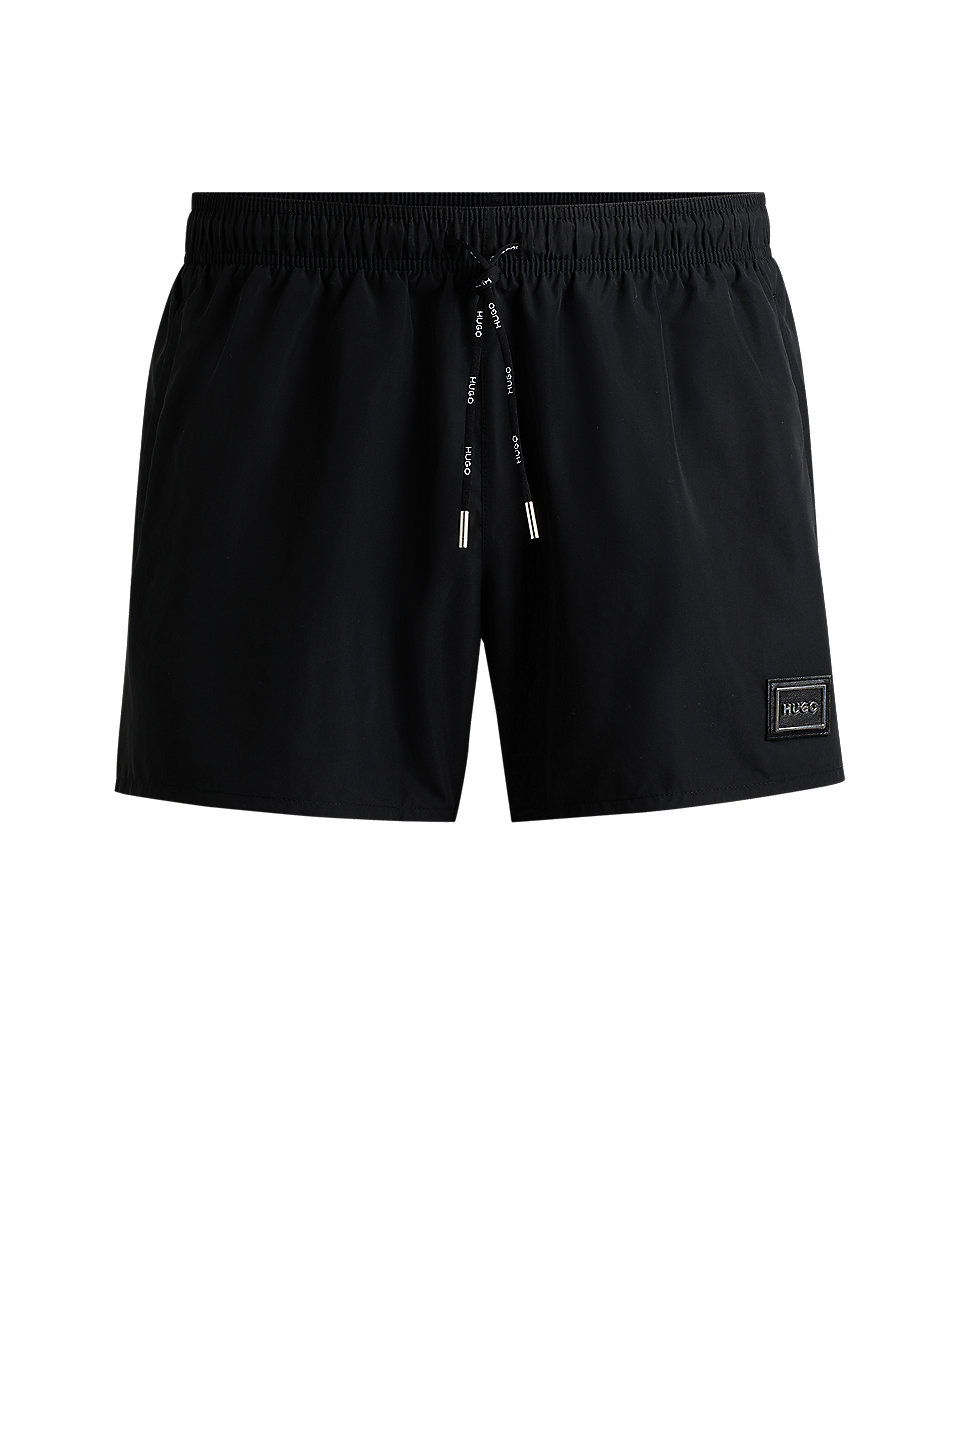 HUGO - Fully lined swim shorts with logo detail